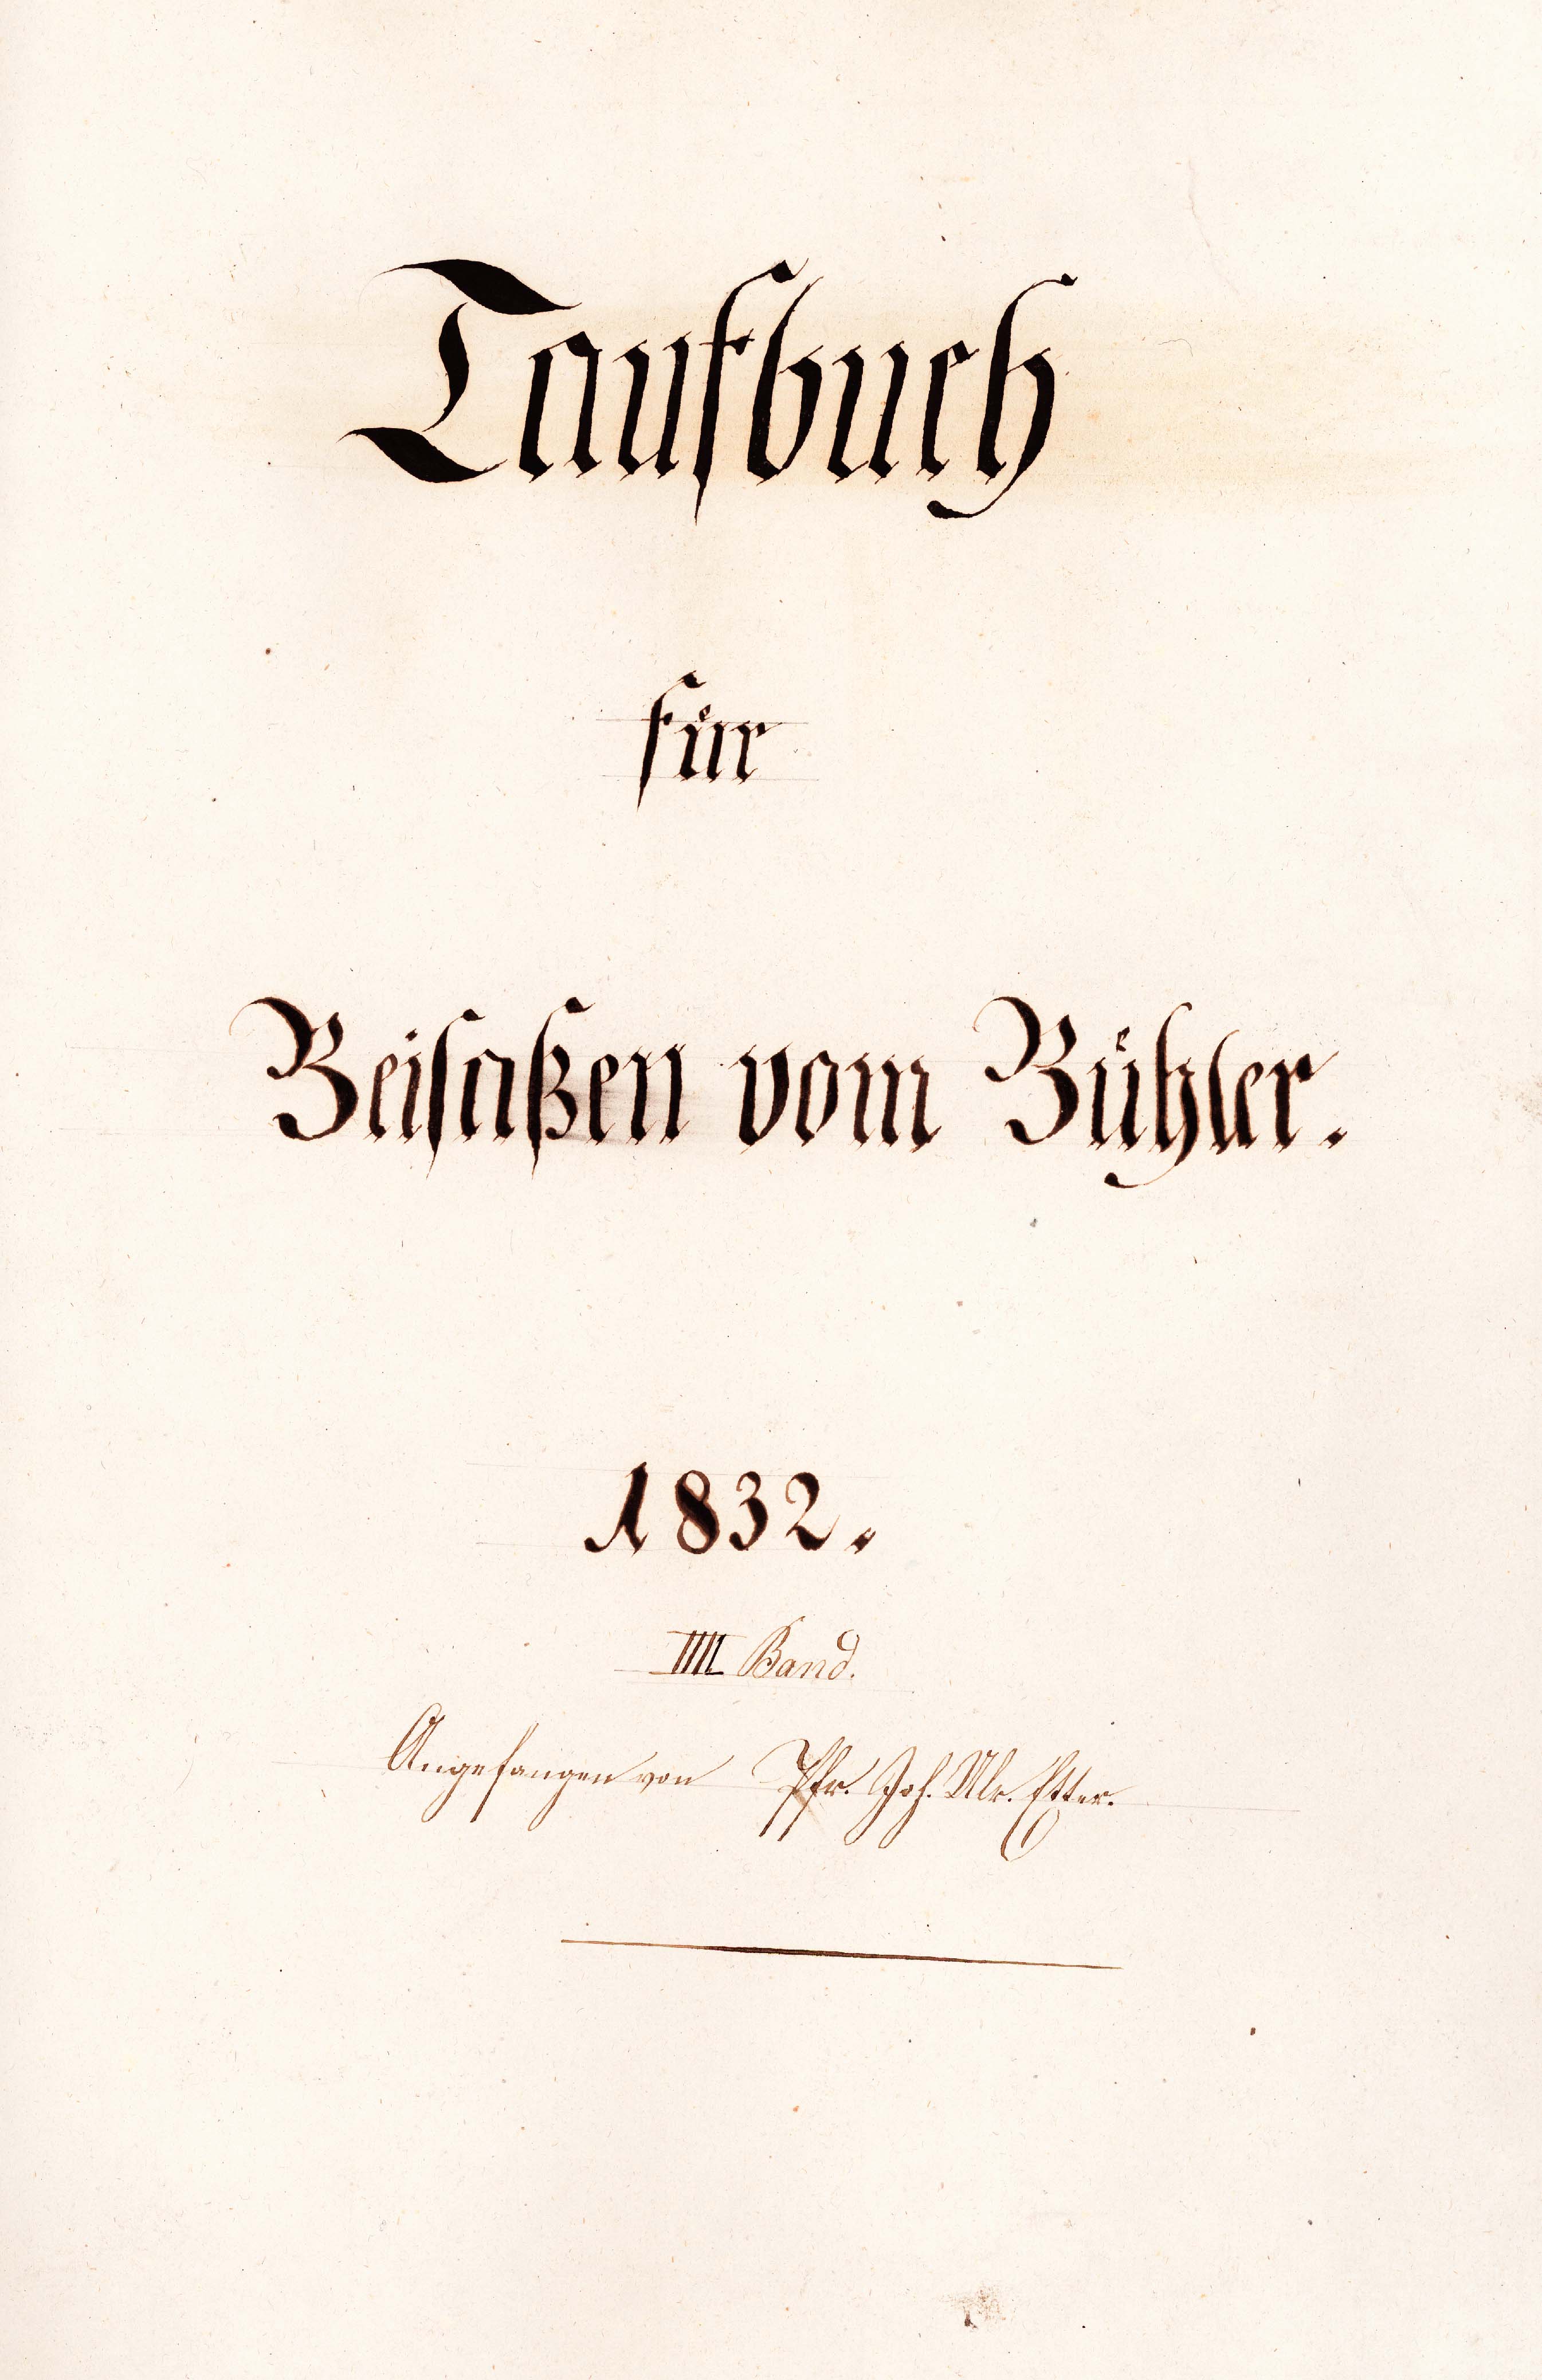 Titelblatt vom Taufbuch für Beisassen von Bühler, 1832, aus dem Gemeindearchiv Bühler